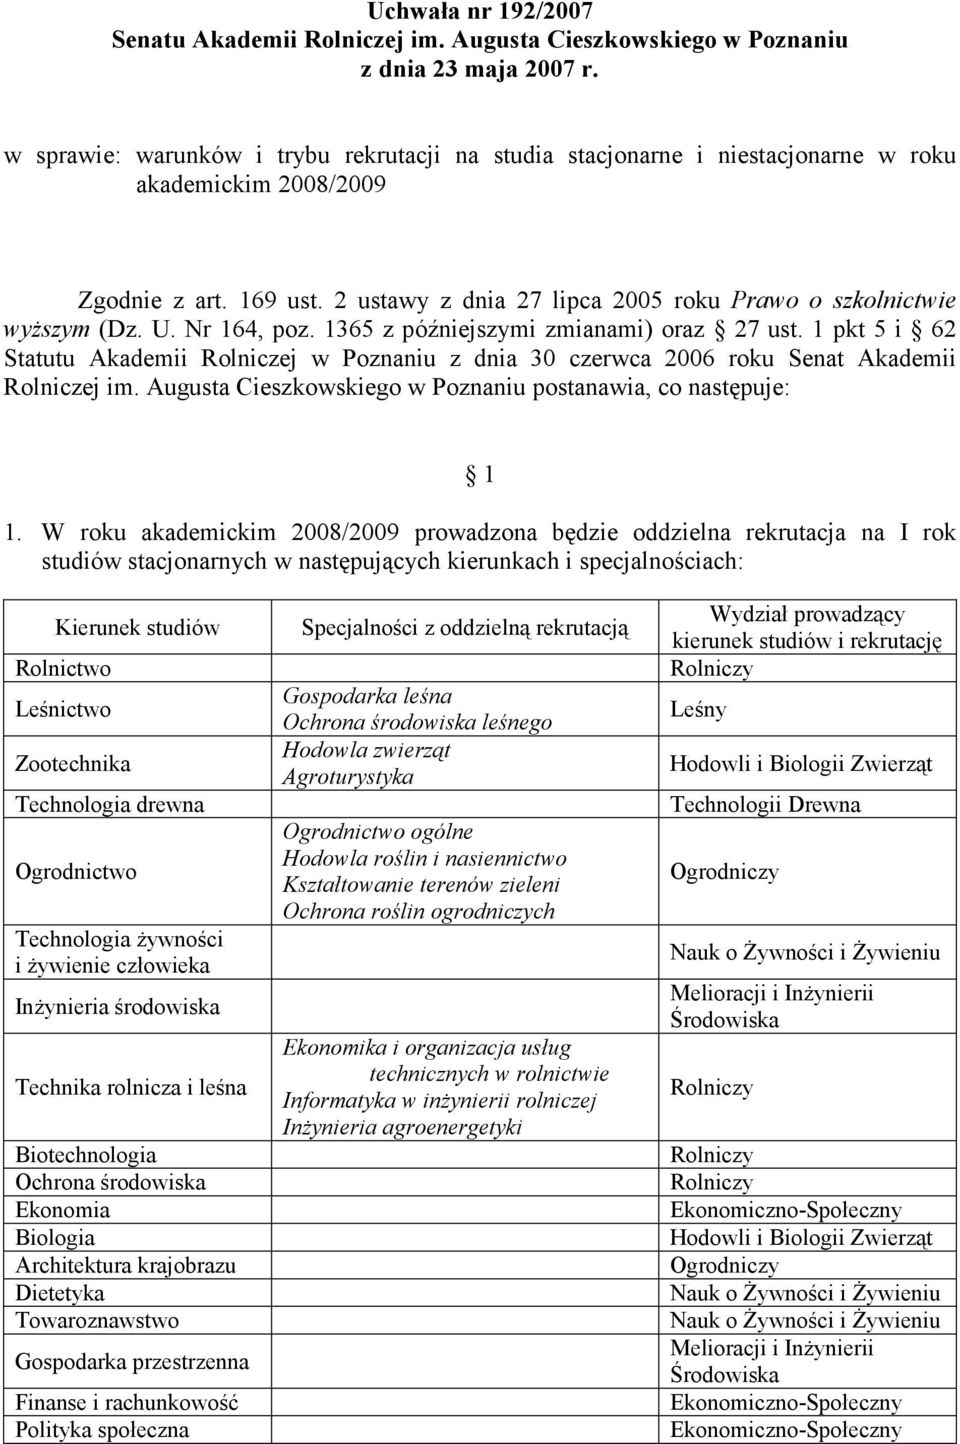 U. Nr 164, poz. 1365 z późniejszymi zmianami) oraz 27 ust. 1 pkt 5 i 62 Statutu Akademii Rolniczej w Poznaniu z dnia 30 czerwca 2006 roku Senat Akademii Rolniczej im.